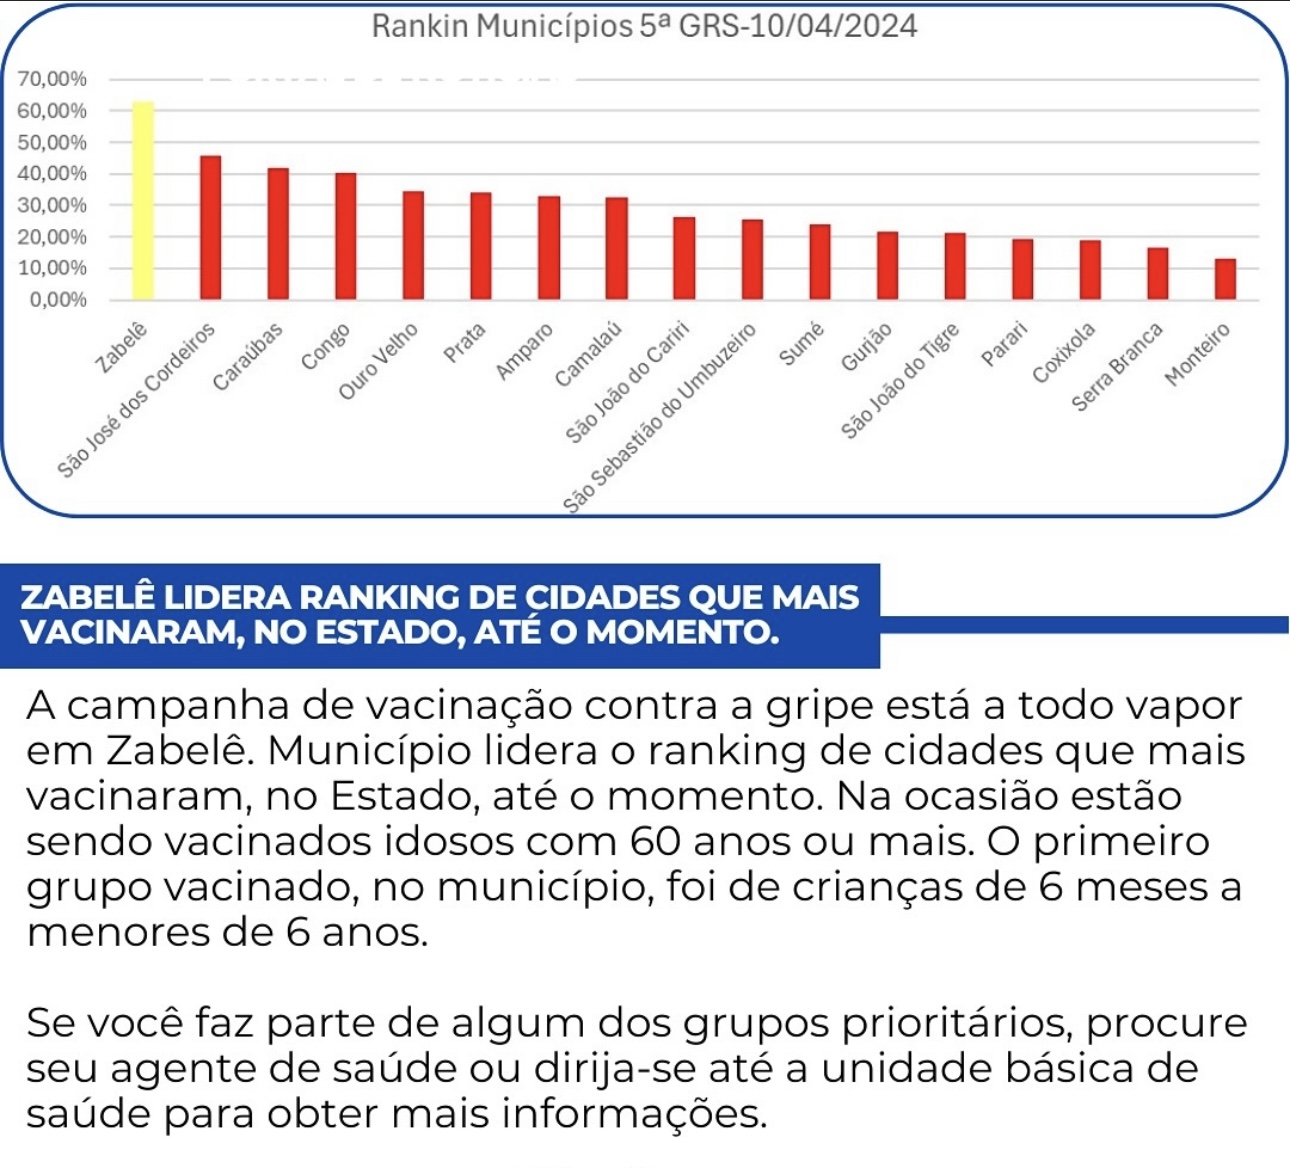 IMG_3592 Zabelê lidera ranking de cidades que mais vacinaram no estado até o momento